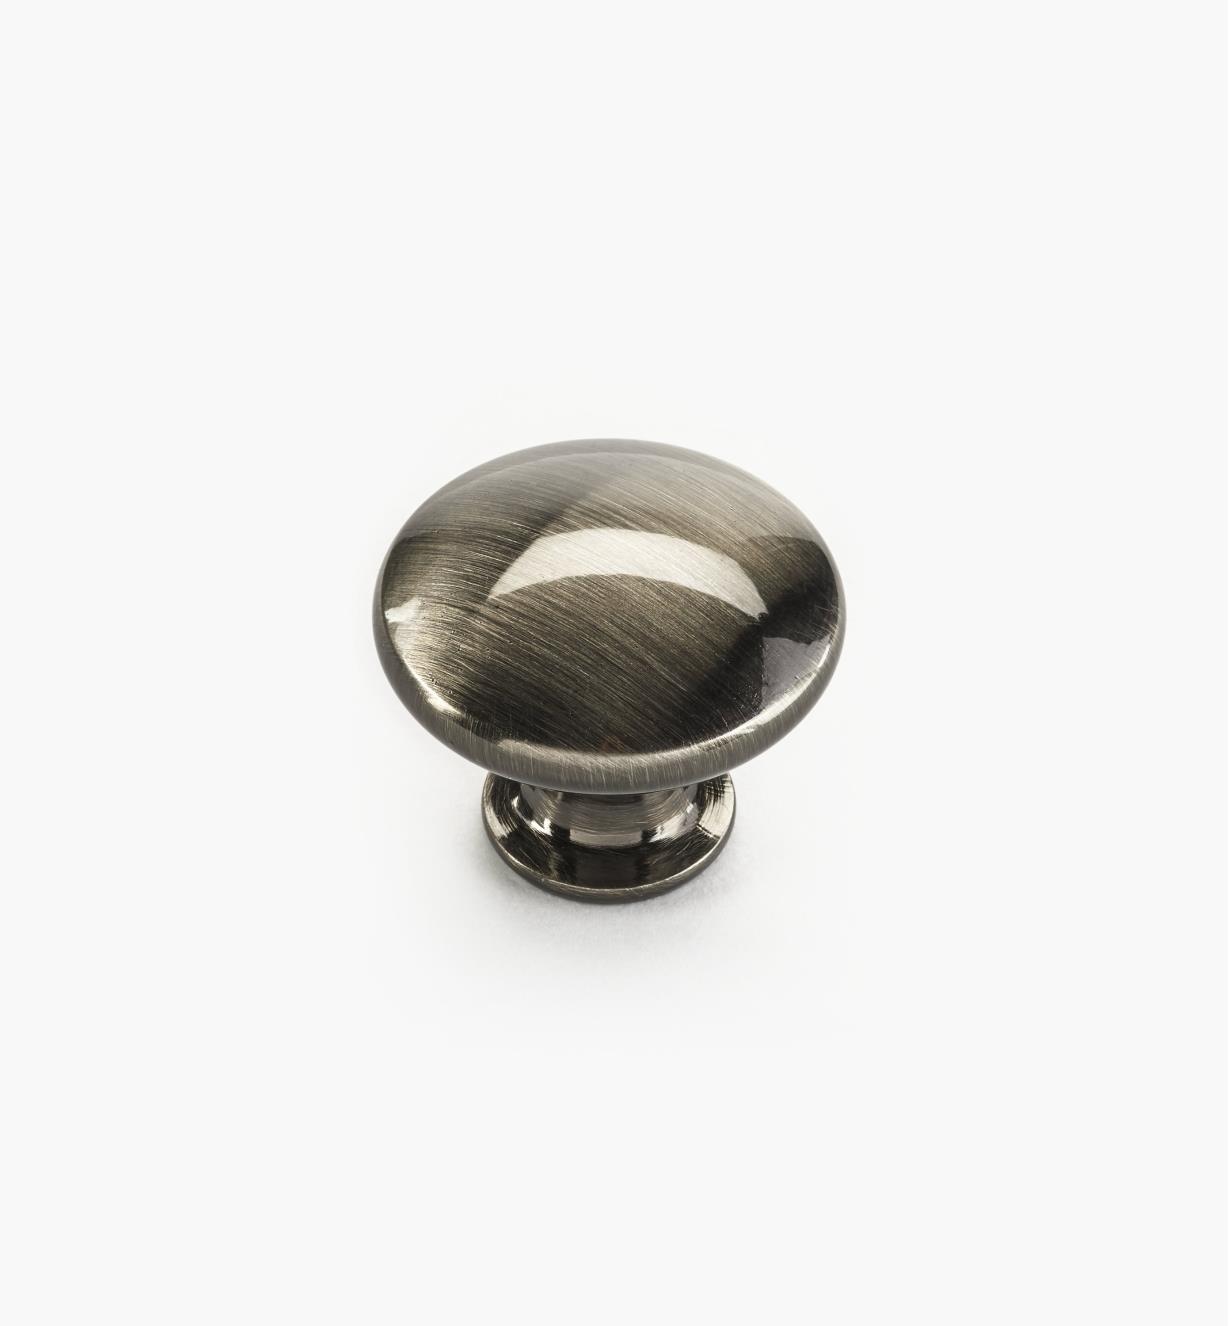 02W4365 - Bouton de 1 po x 3/4 po, collection classique, fini nickel noir brossé